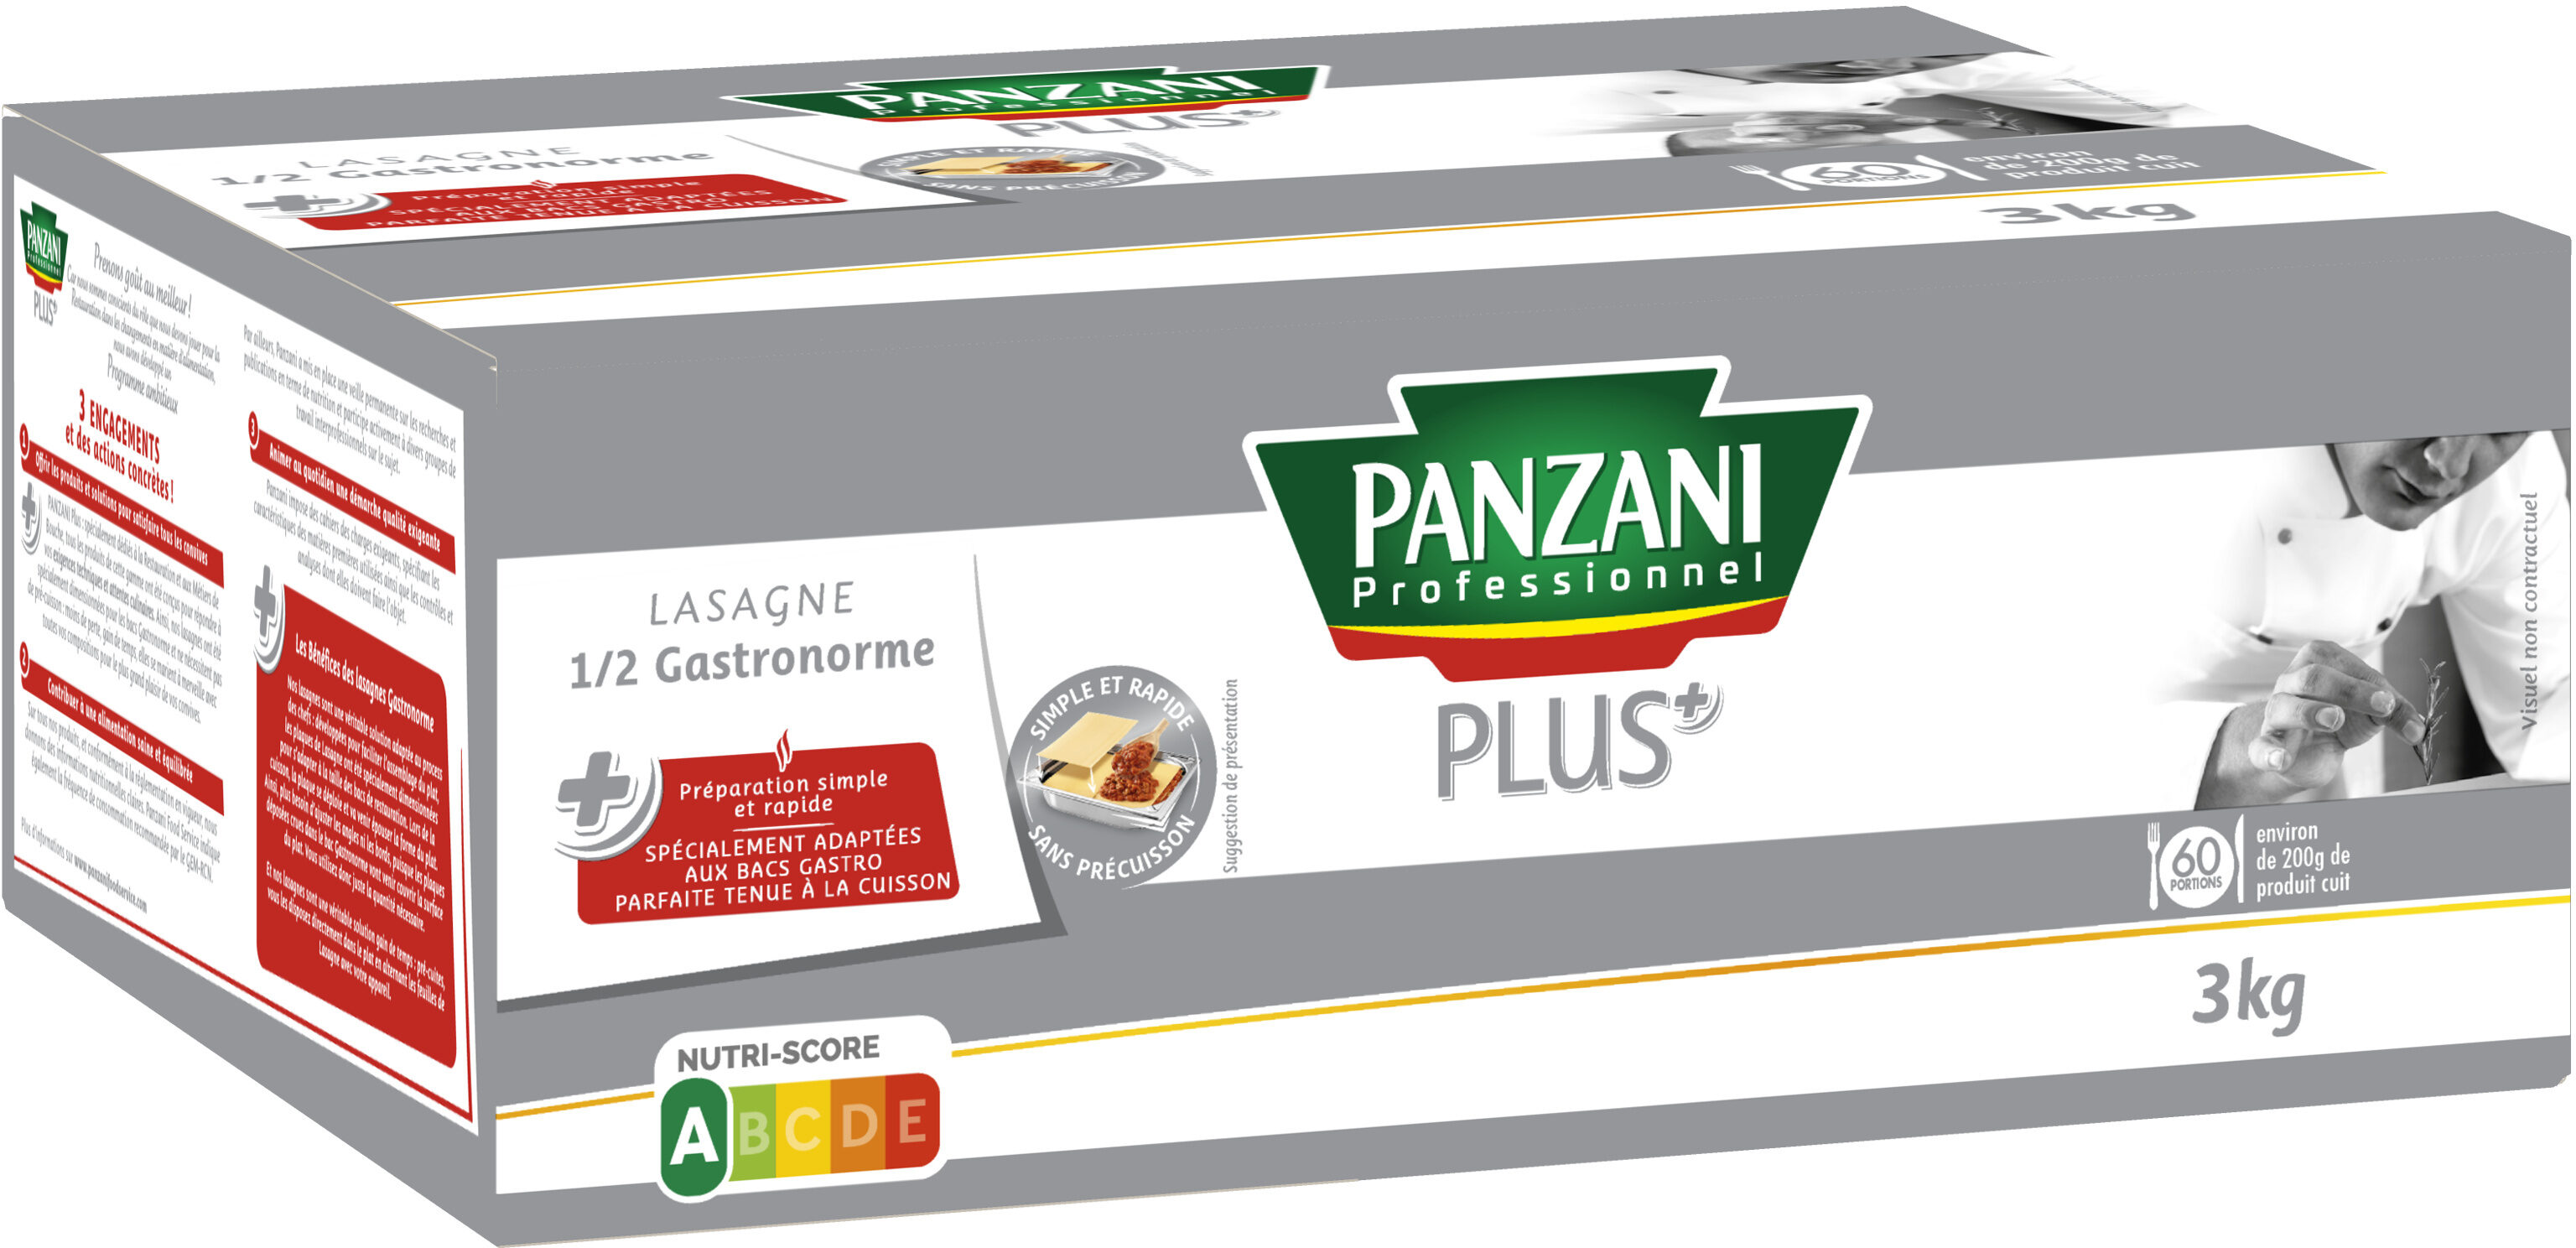 Panzani lasagne 1/2 gastronorme panzani+ 3kg - Produit